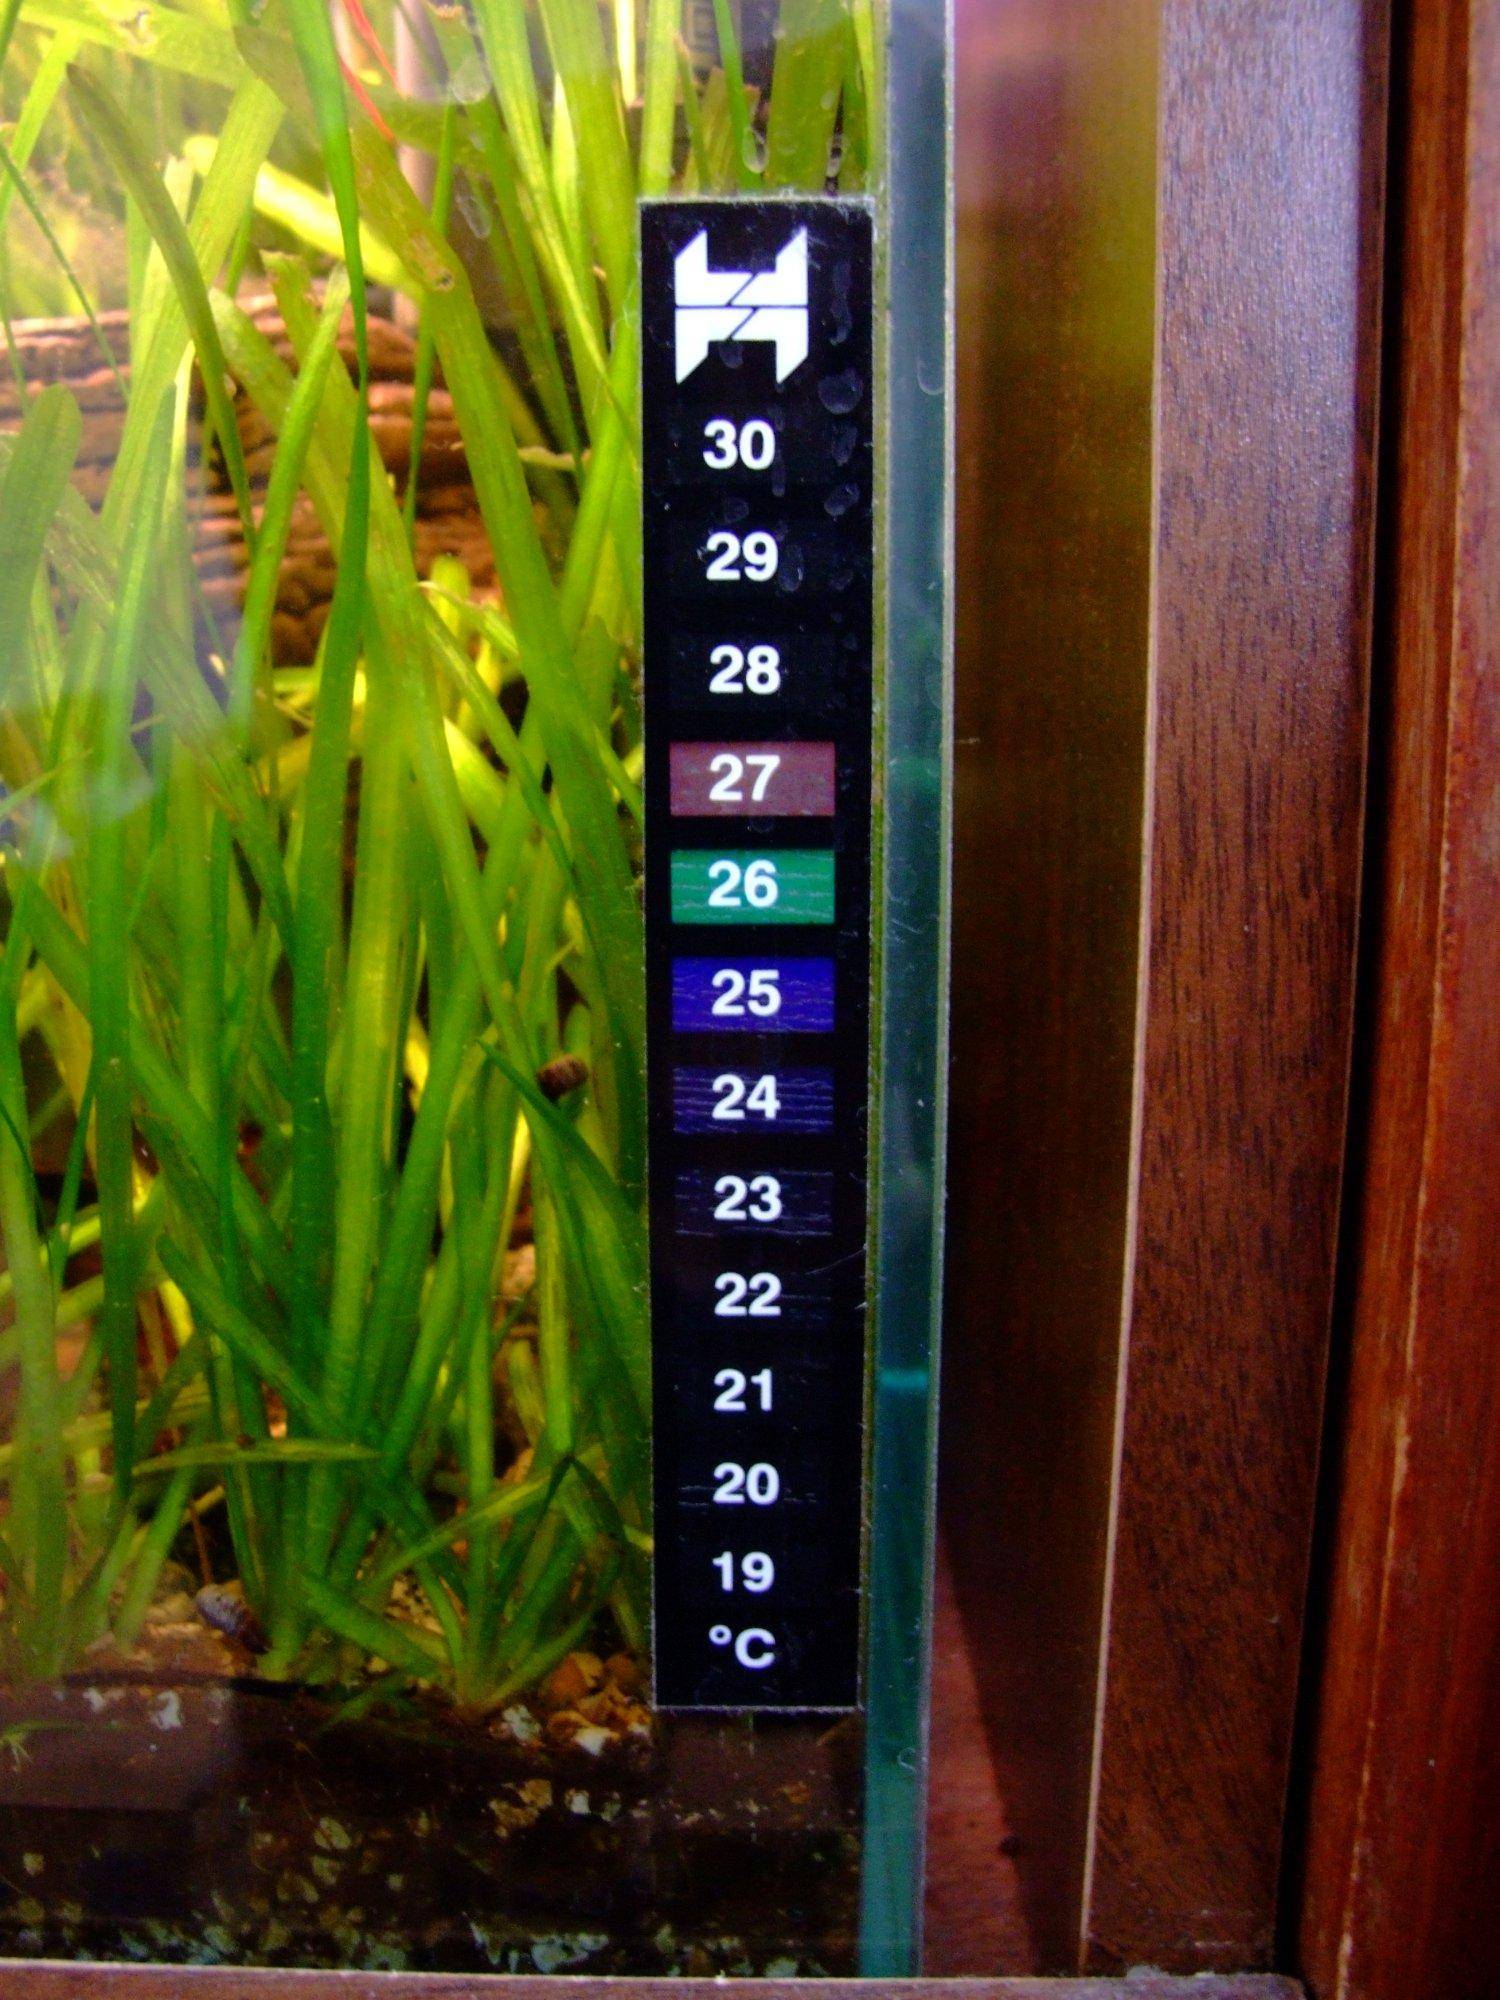 Thermomètre d'aquarium